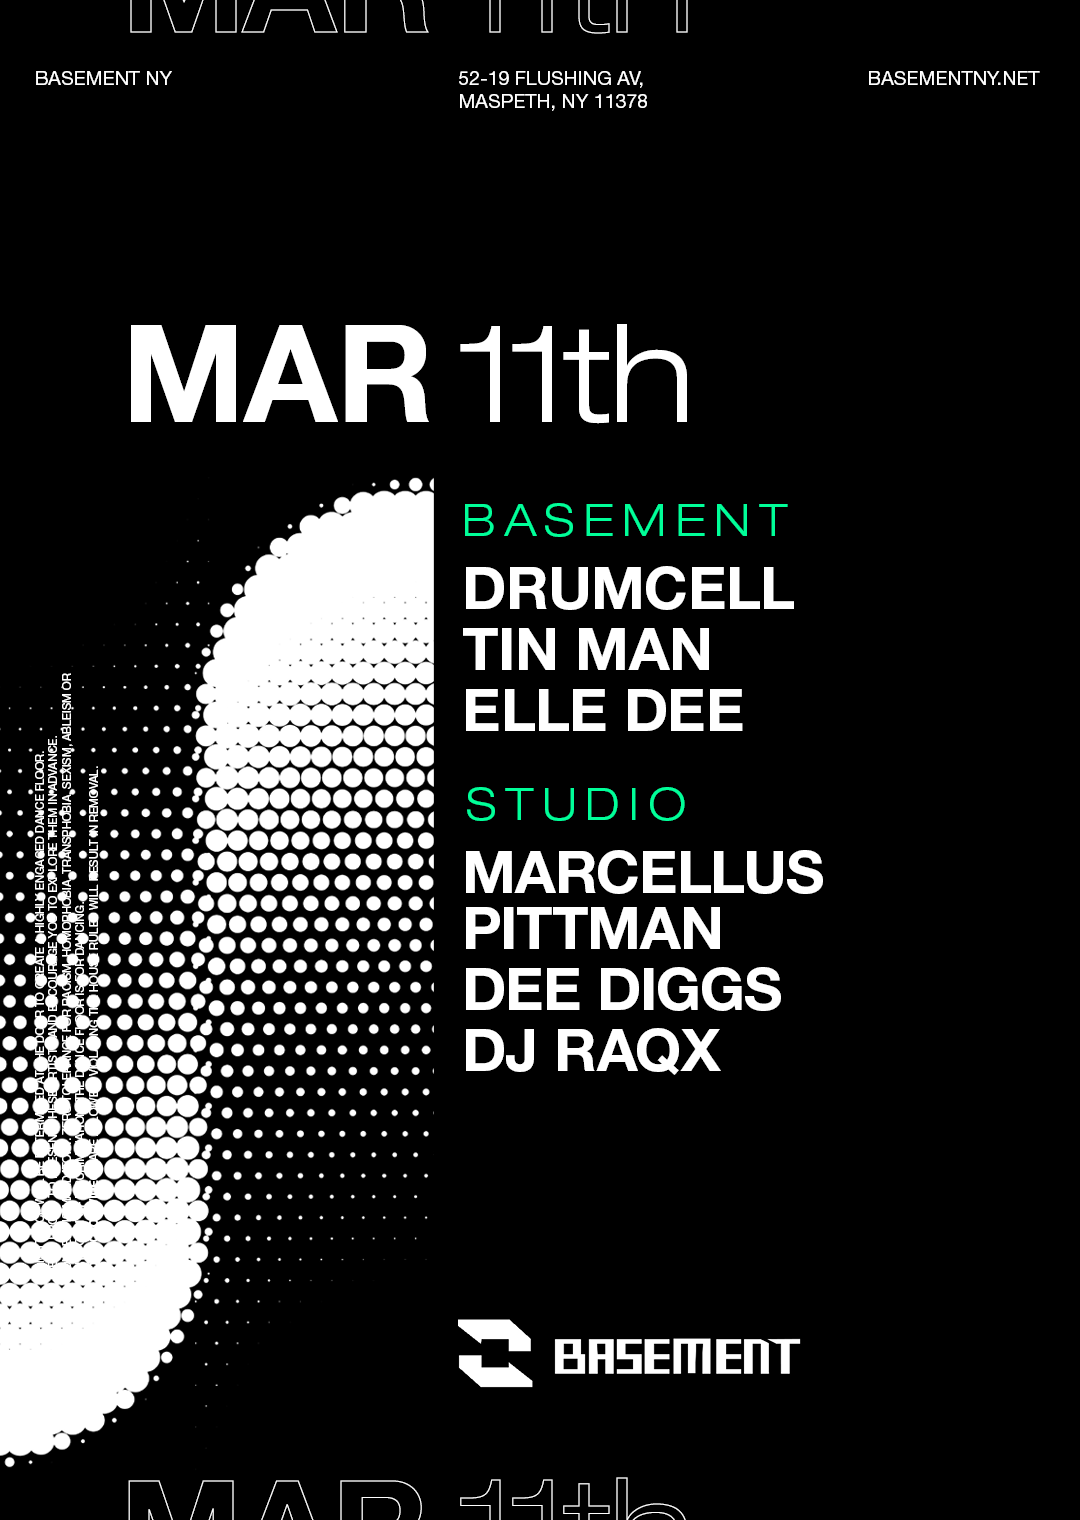 Drumcell / Tin Man / Elle Dee / Marcellus Pittman / Dee Diggs / DJ RAQX - Página frontal